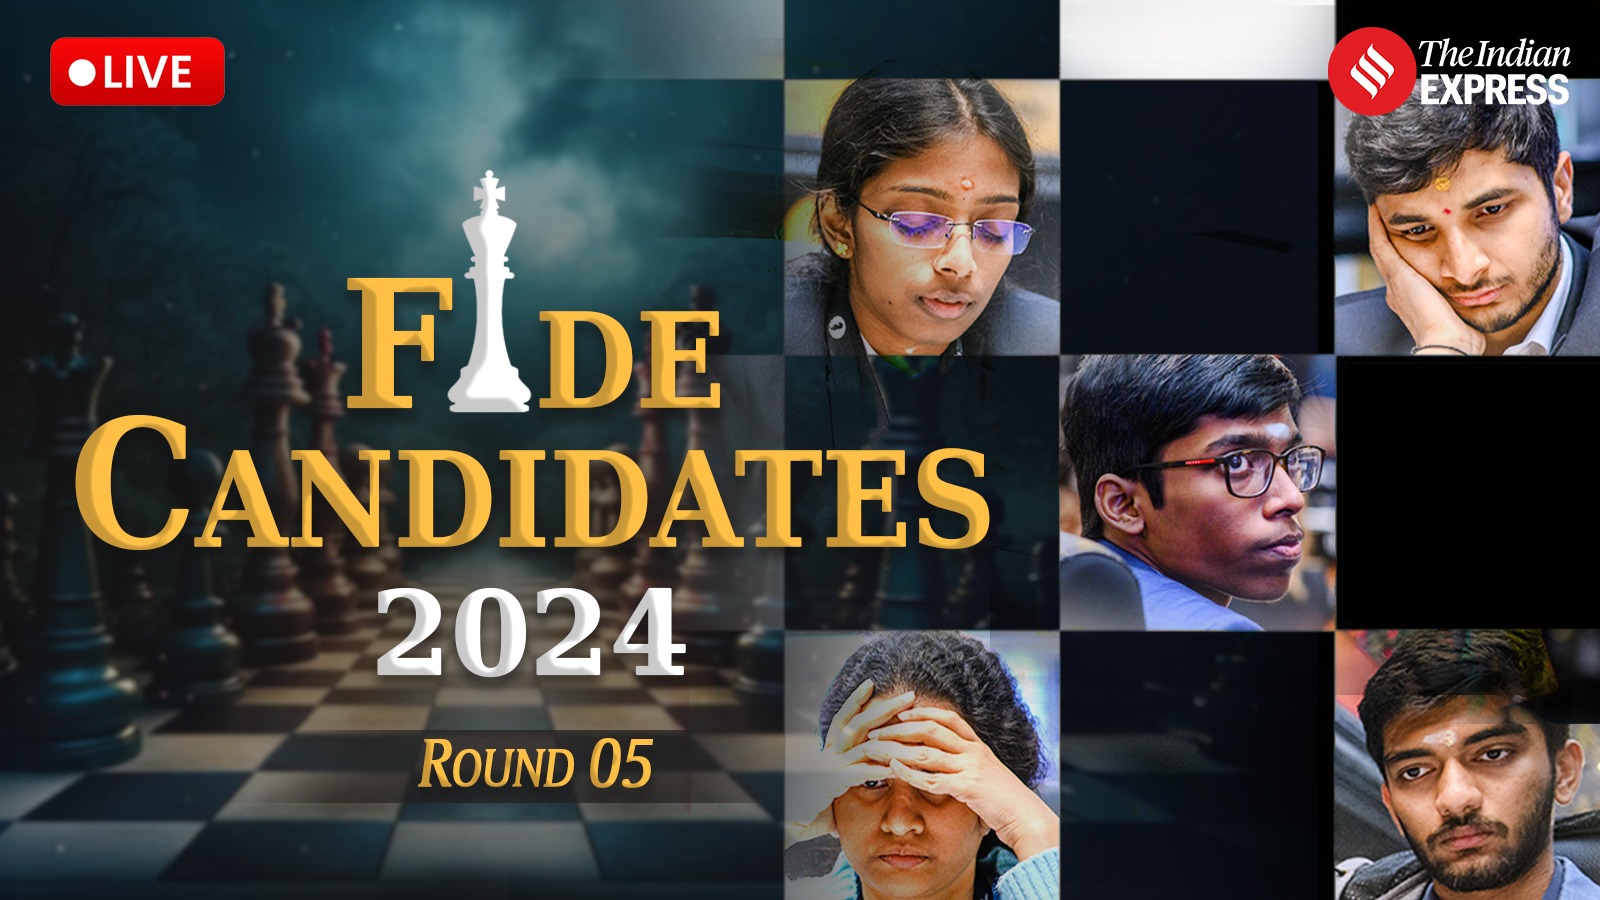 2024 年国际象棋候选人实时更新：普拉格南达哈给内波带来巨大压力；维迪特再次陷入时间困境 | 国际象棋新闻